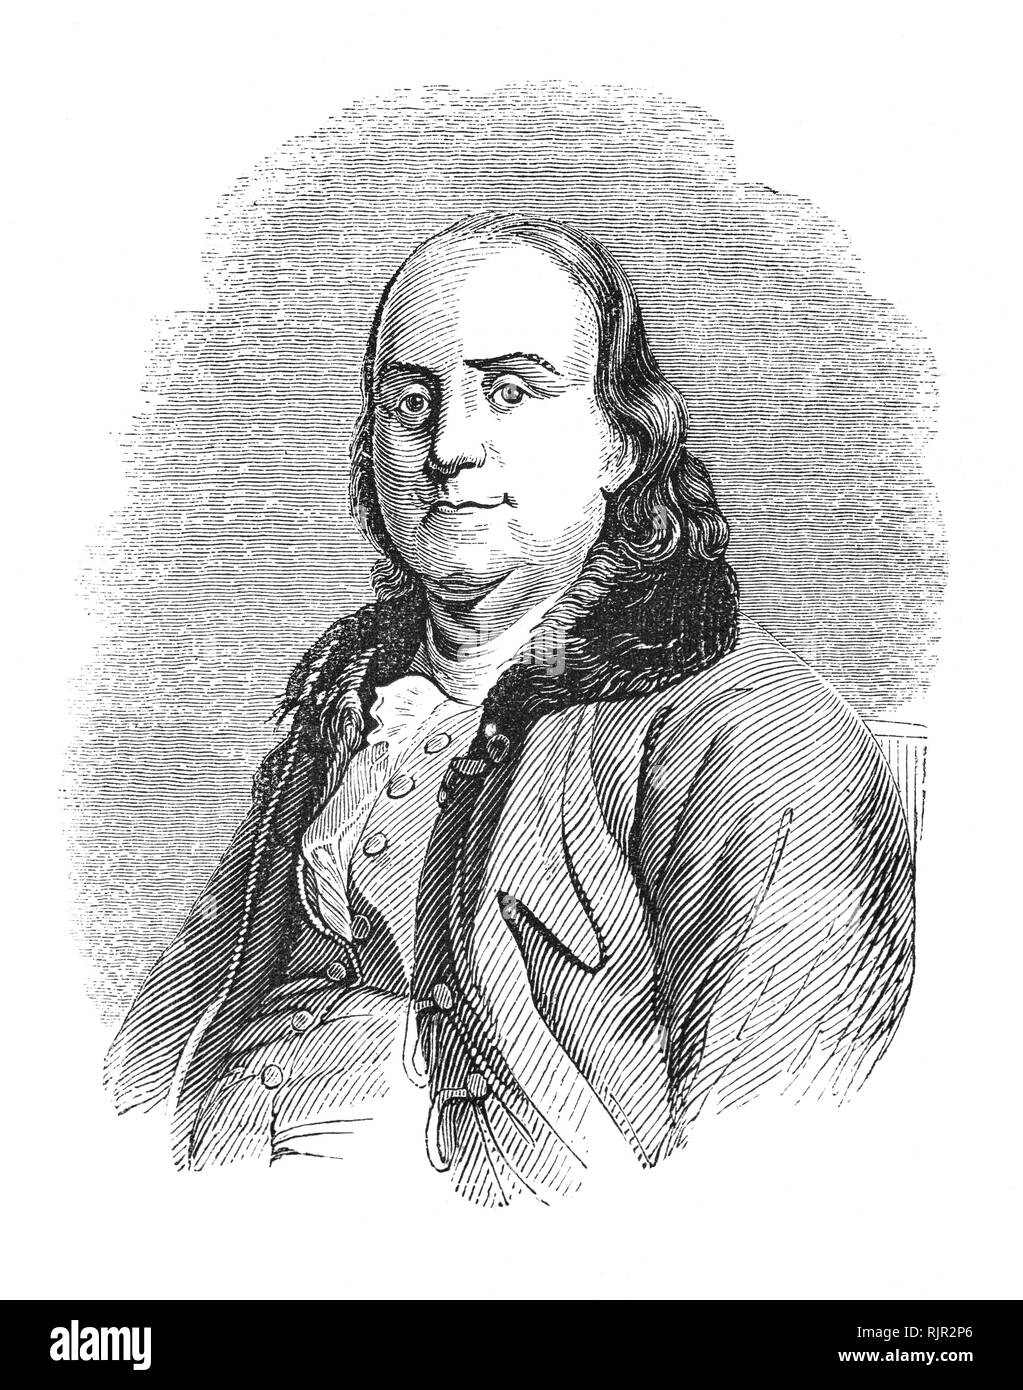 Un retrato de Benjamin Franklin (1706-1790), un erudito americano y uno de  los Padres Fundadores de los Estados Unidos. Franklin fue un destacado  autor, impresora, teórico político, político, Francmasón, postmaster,  científico, inventor,